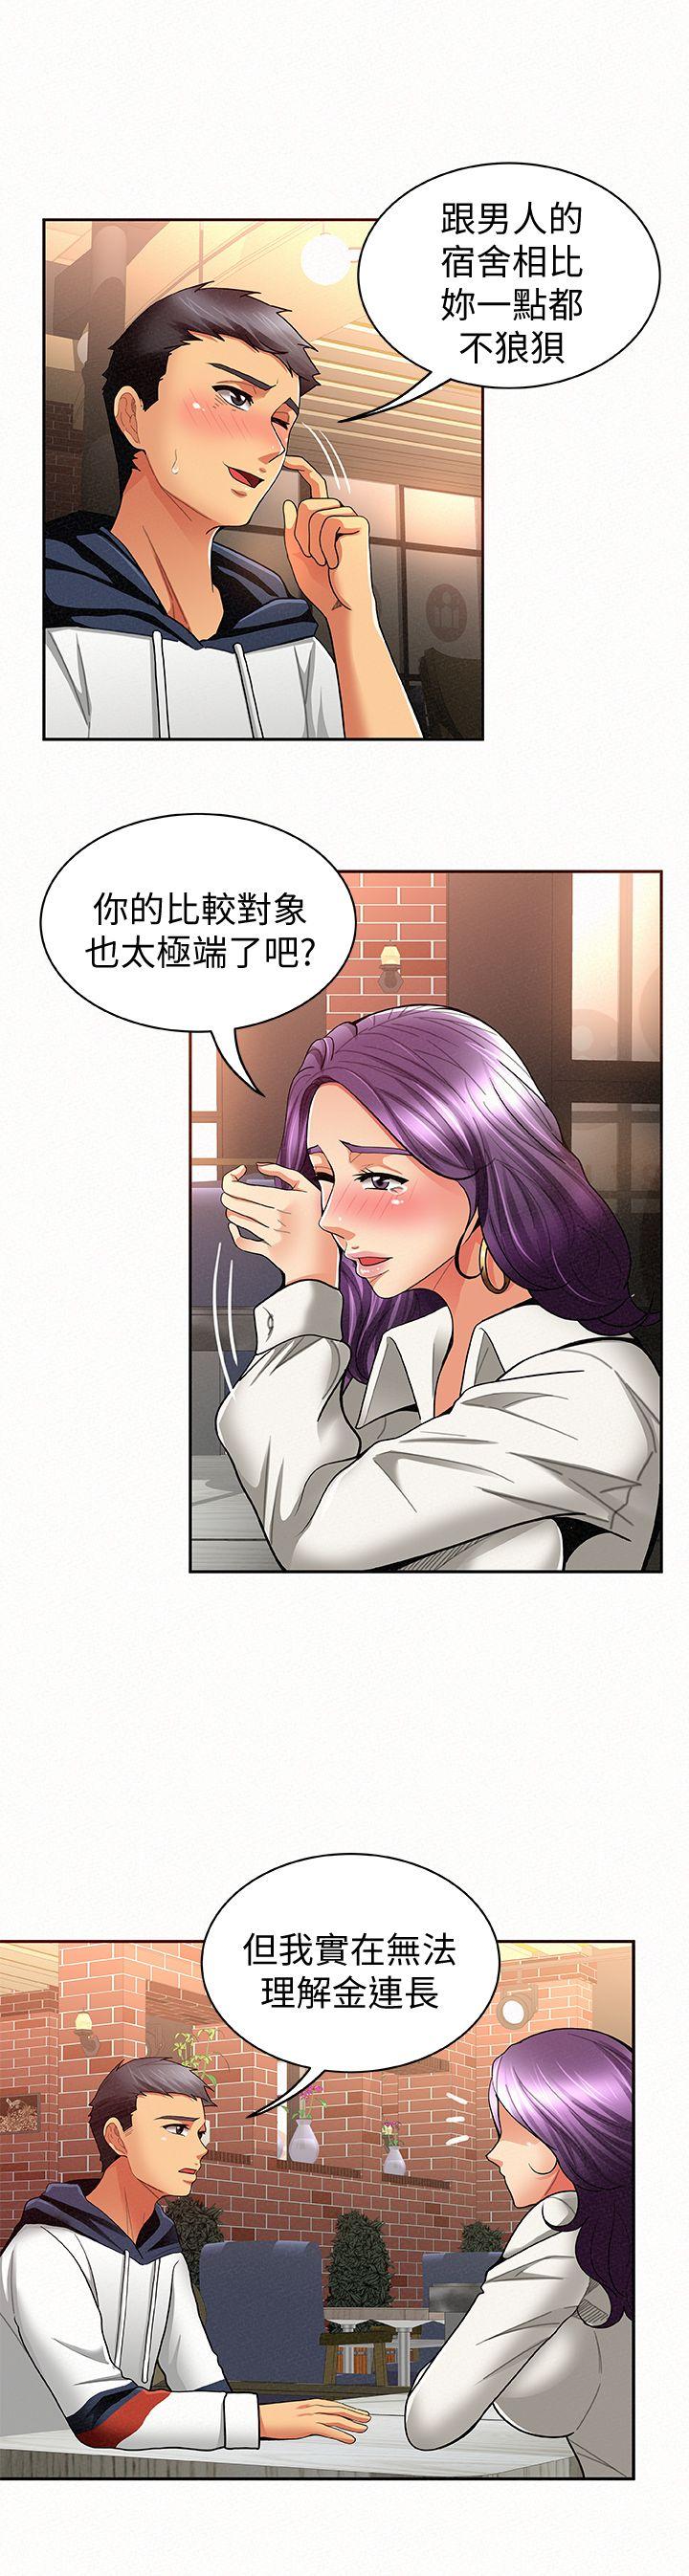 韩国污漫画 報告夫人 第8话-别管女儿了，专心对我 30